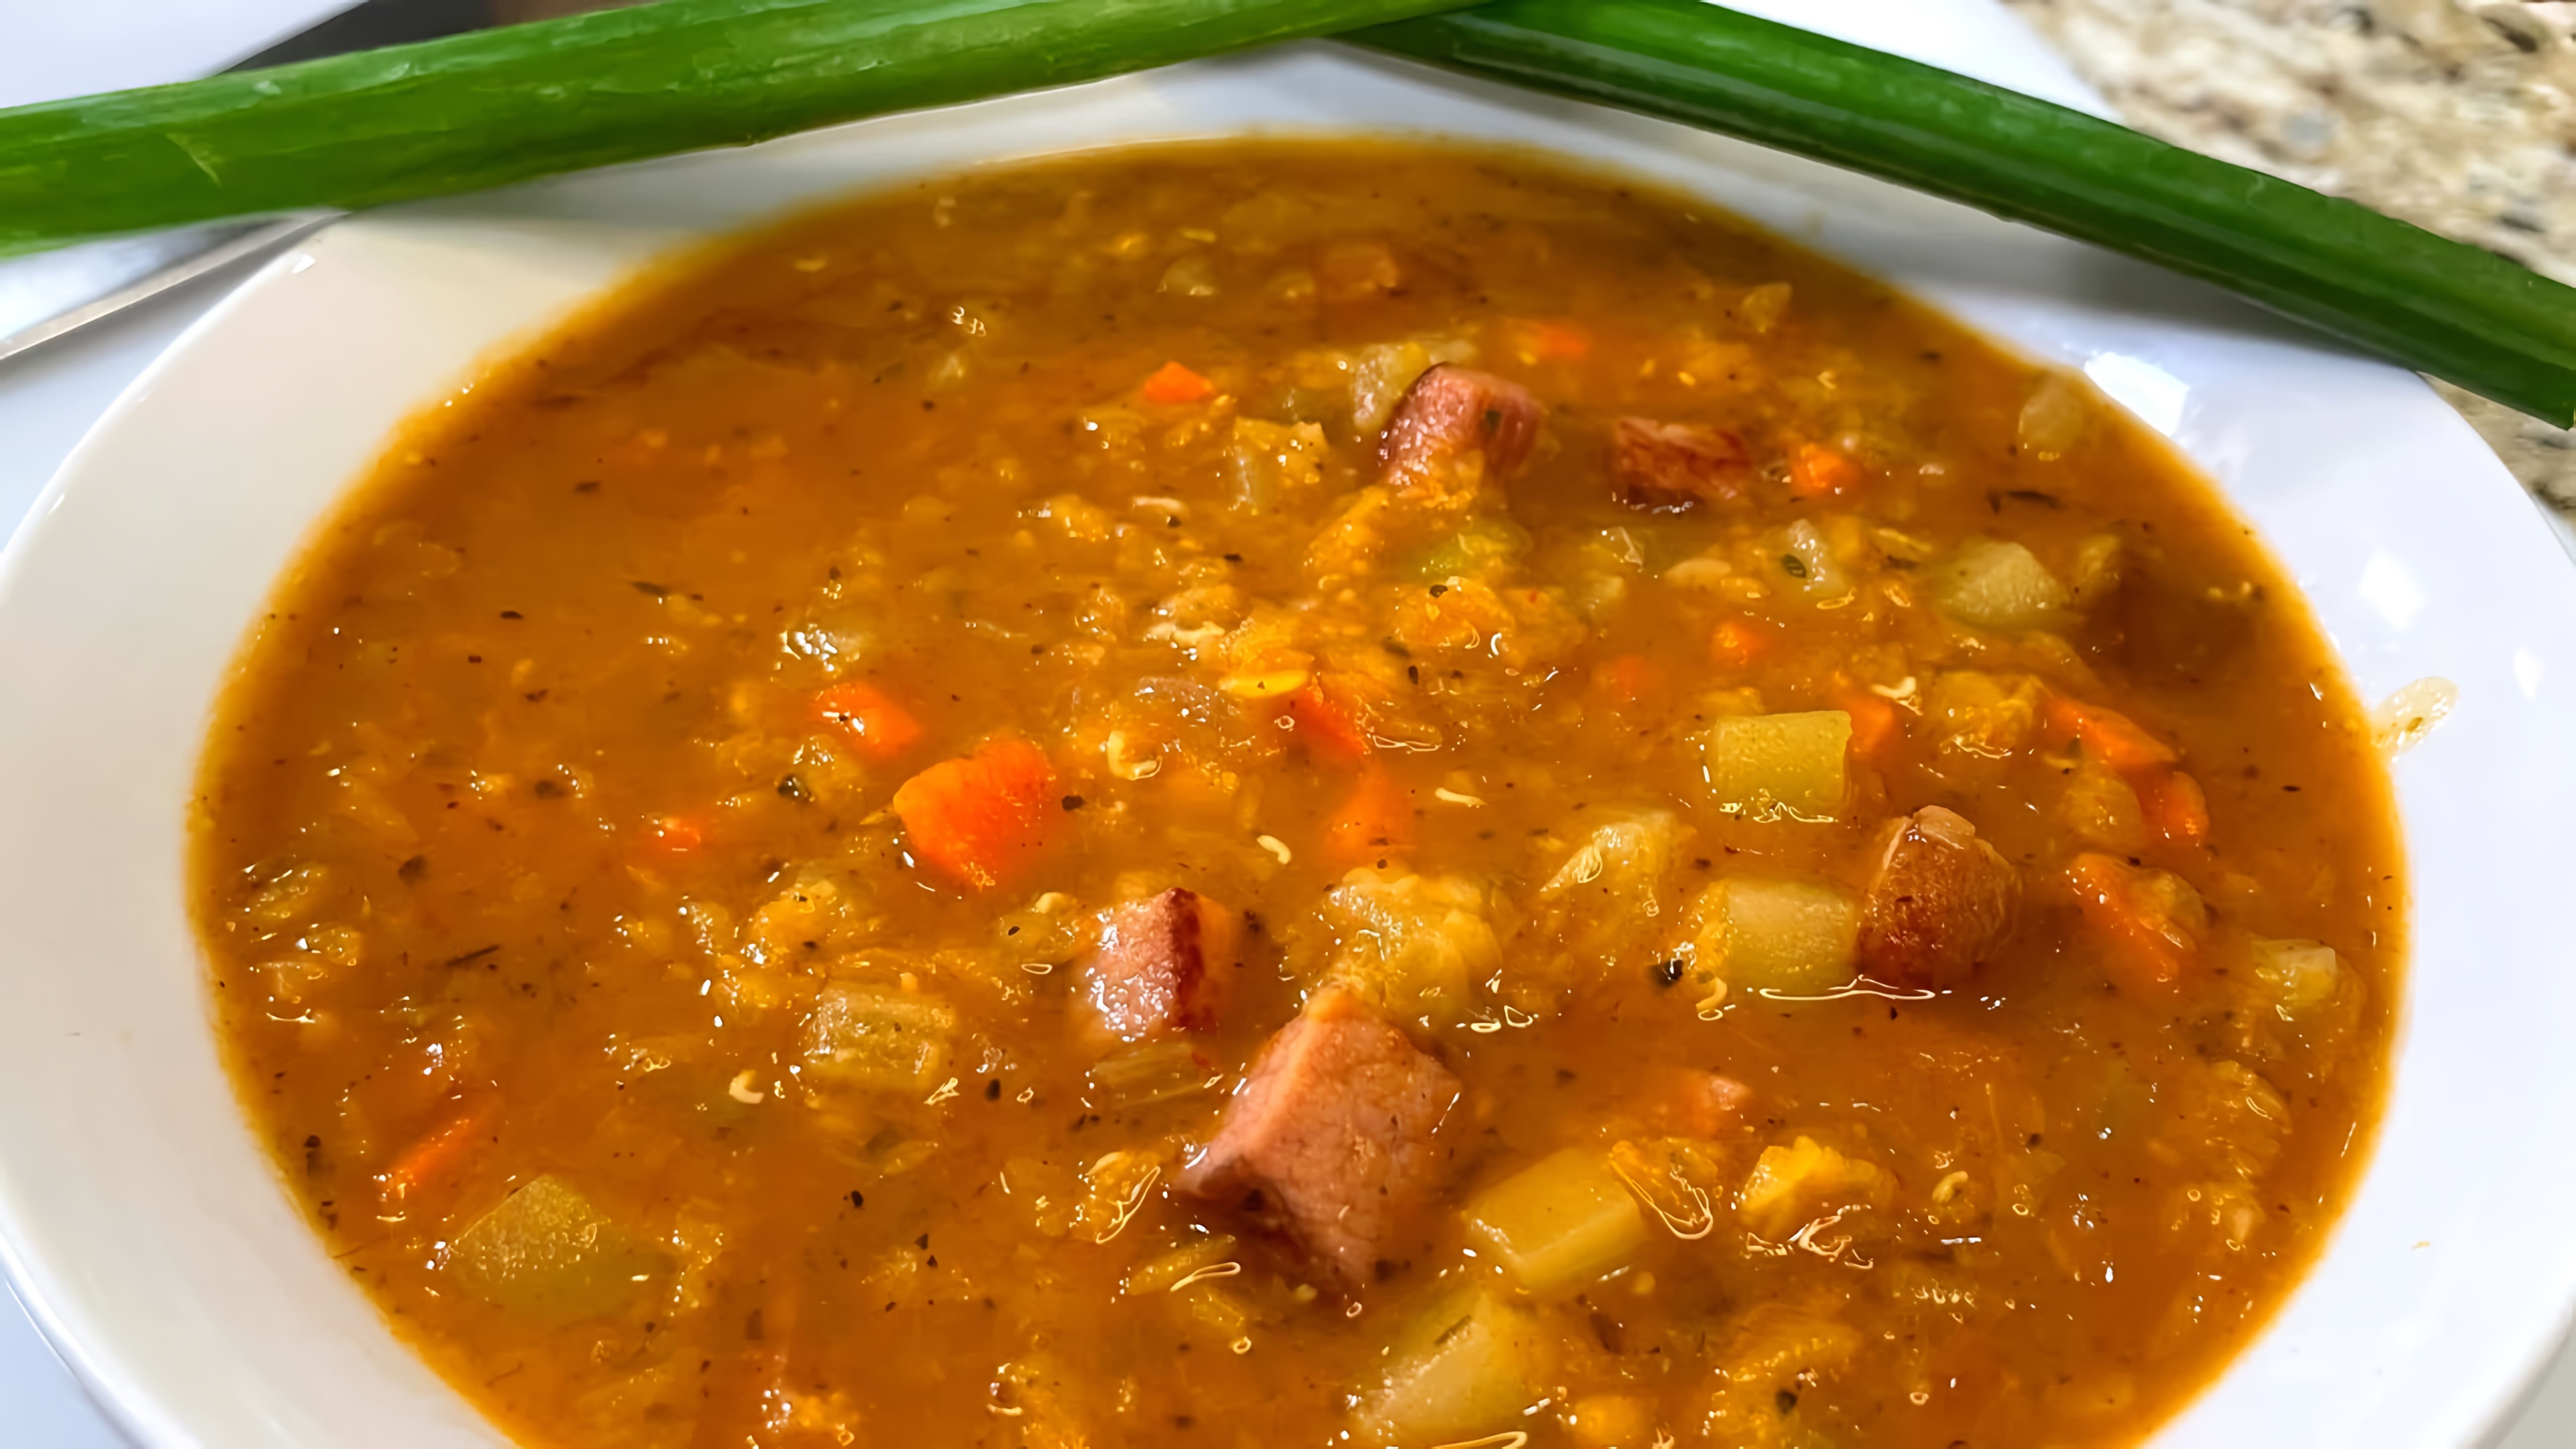 Видео: Я могу есть этот Суп каждый день. Вкусный суп, Простой и Быстрый рецепт! Такой суп съедают за раз!